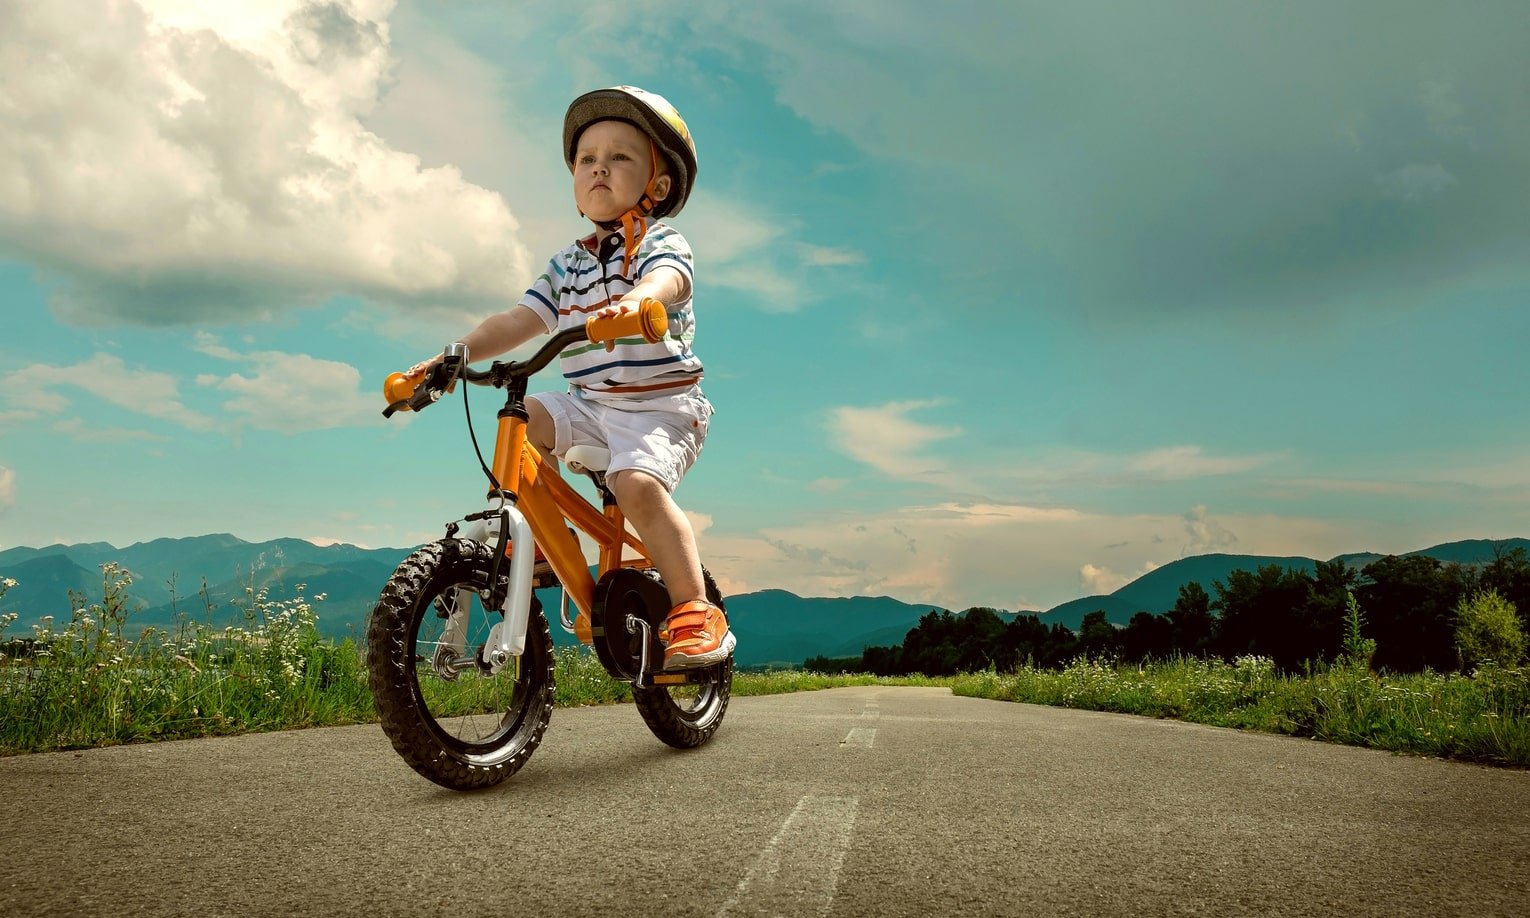 väike poiss sõidab jalgrattaga maanteel